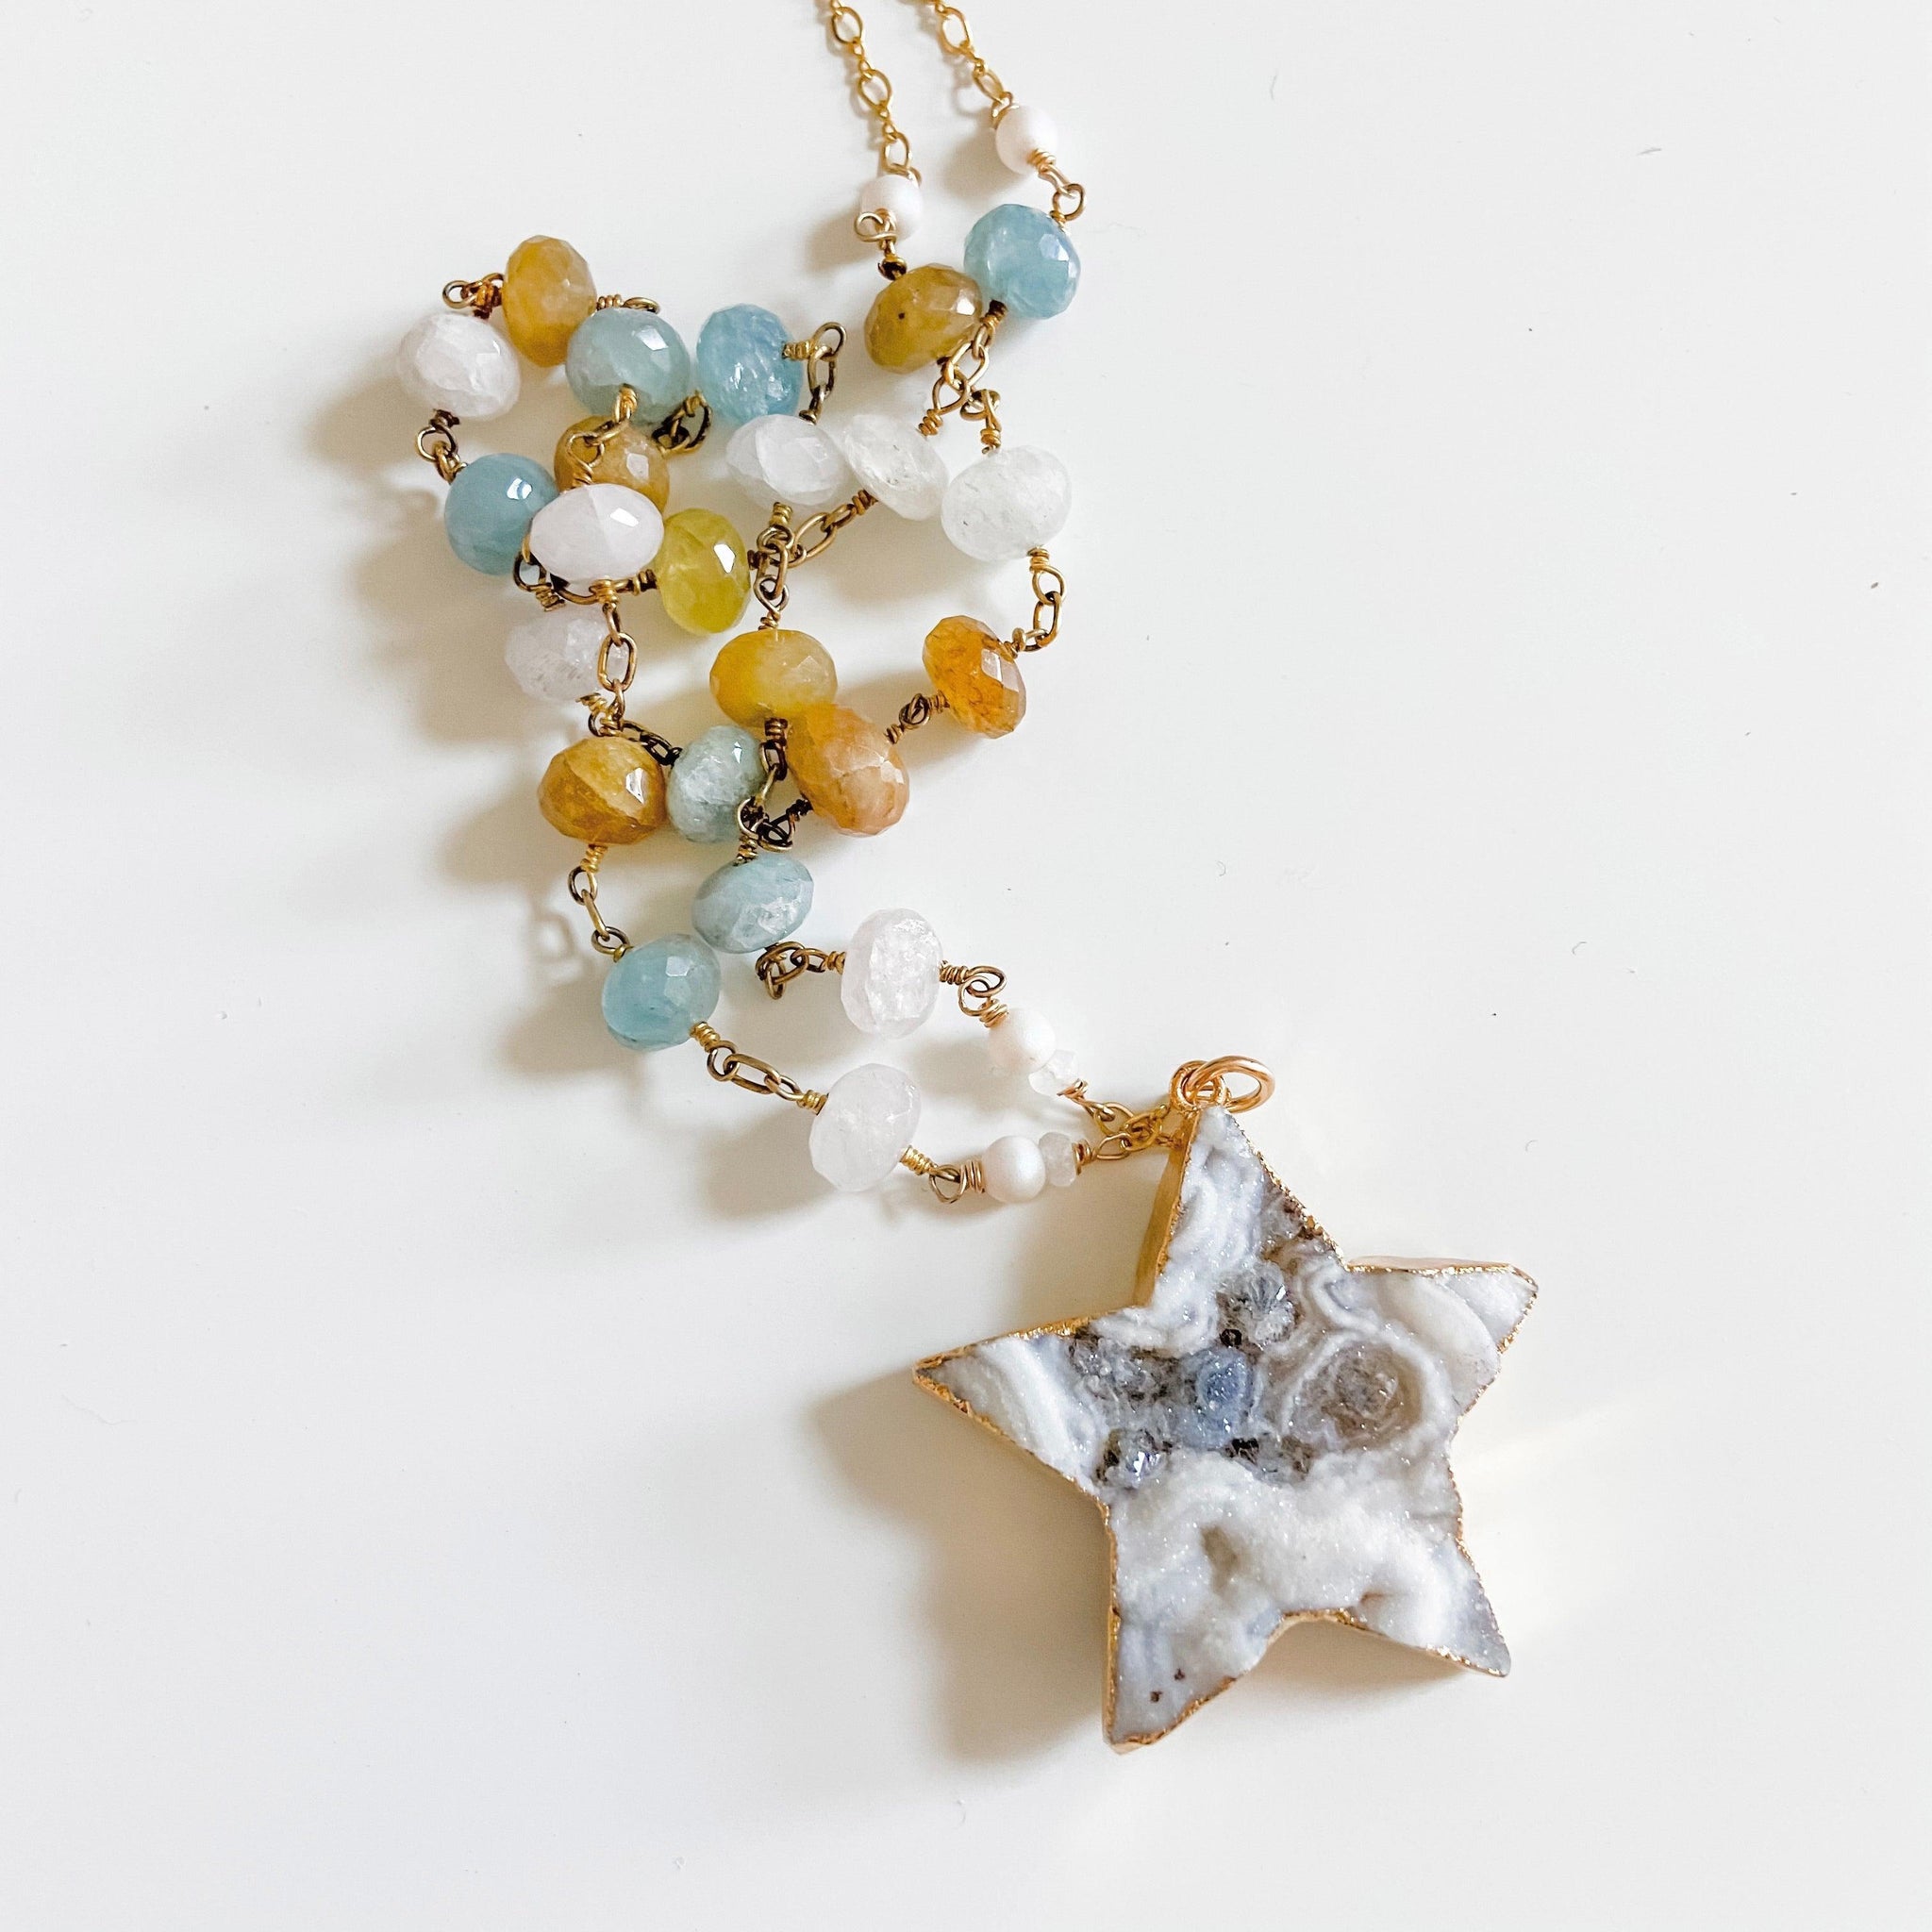 Large Druzy Quartz Star, Apatite, Sunstone and Quartz with 14K Gold Filled Necklace Uni-T Necklace